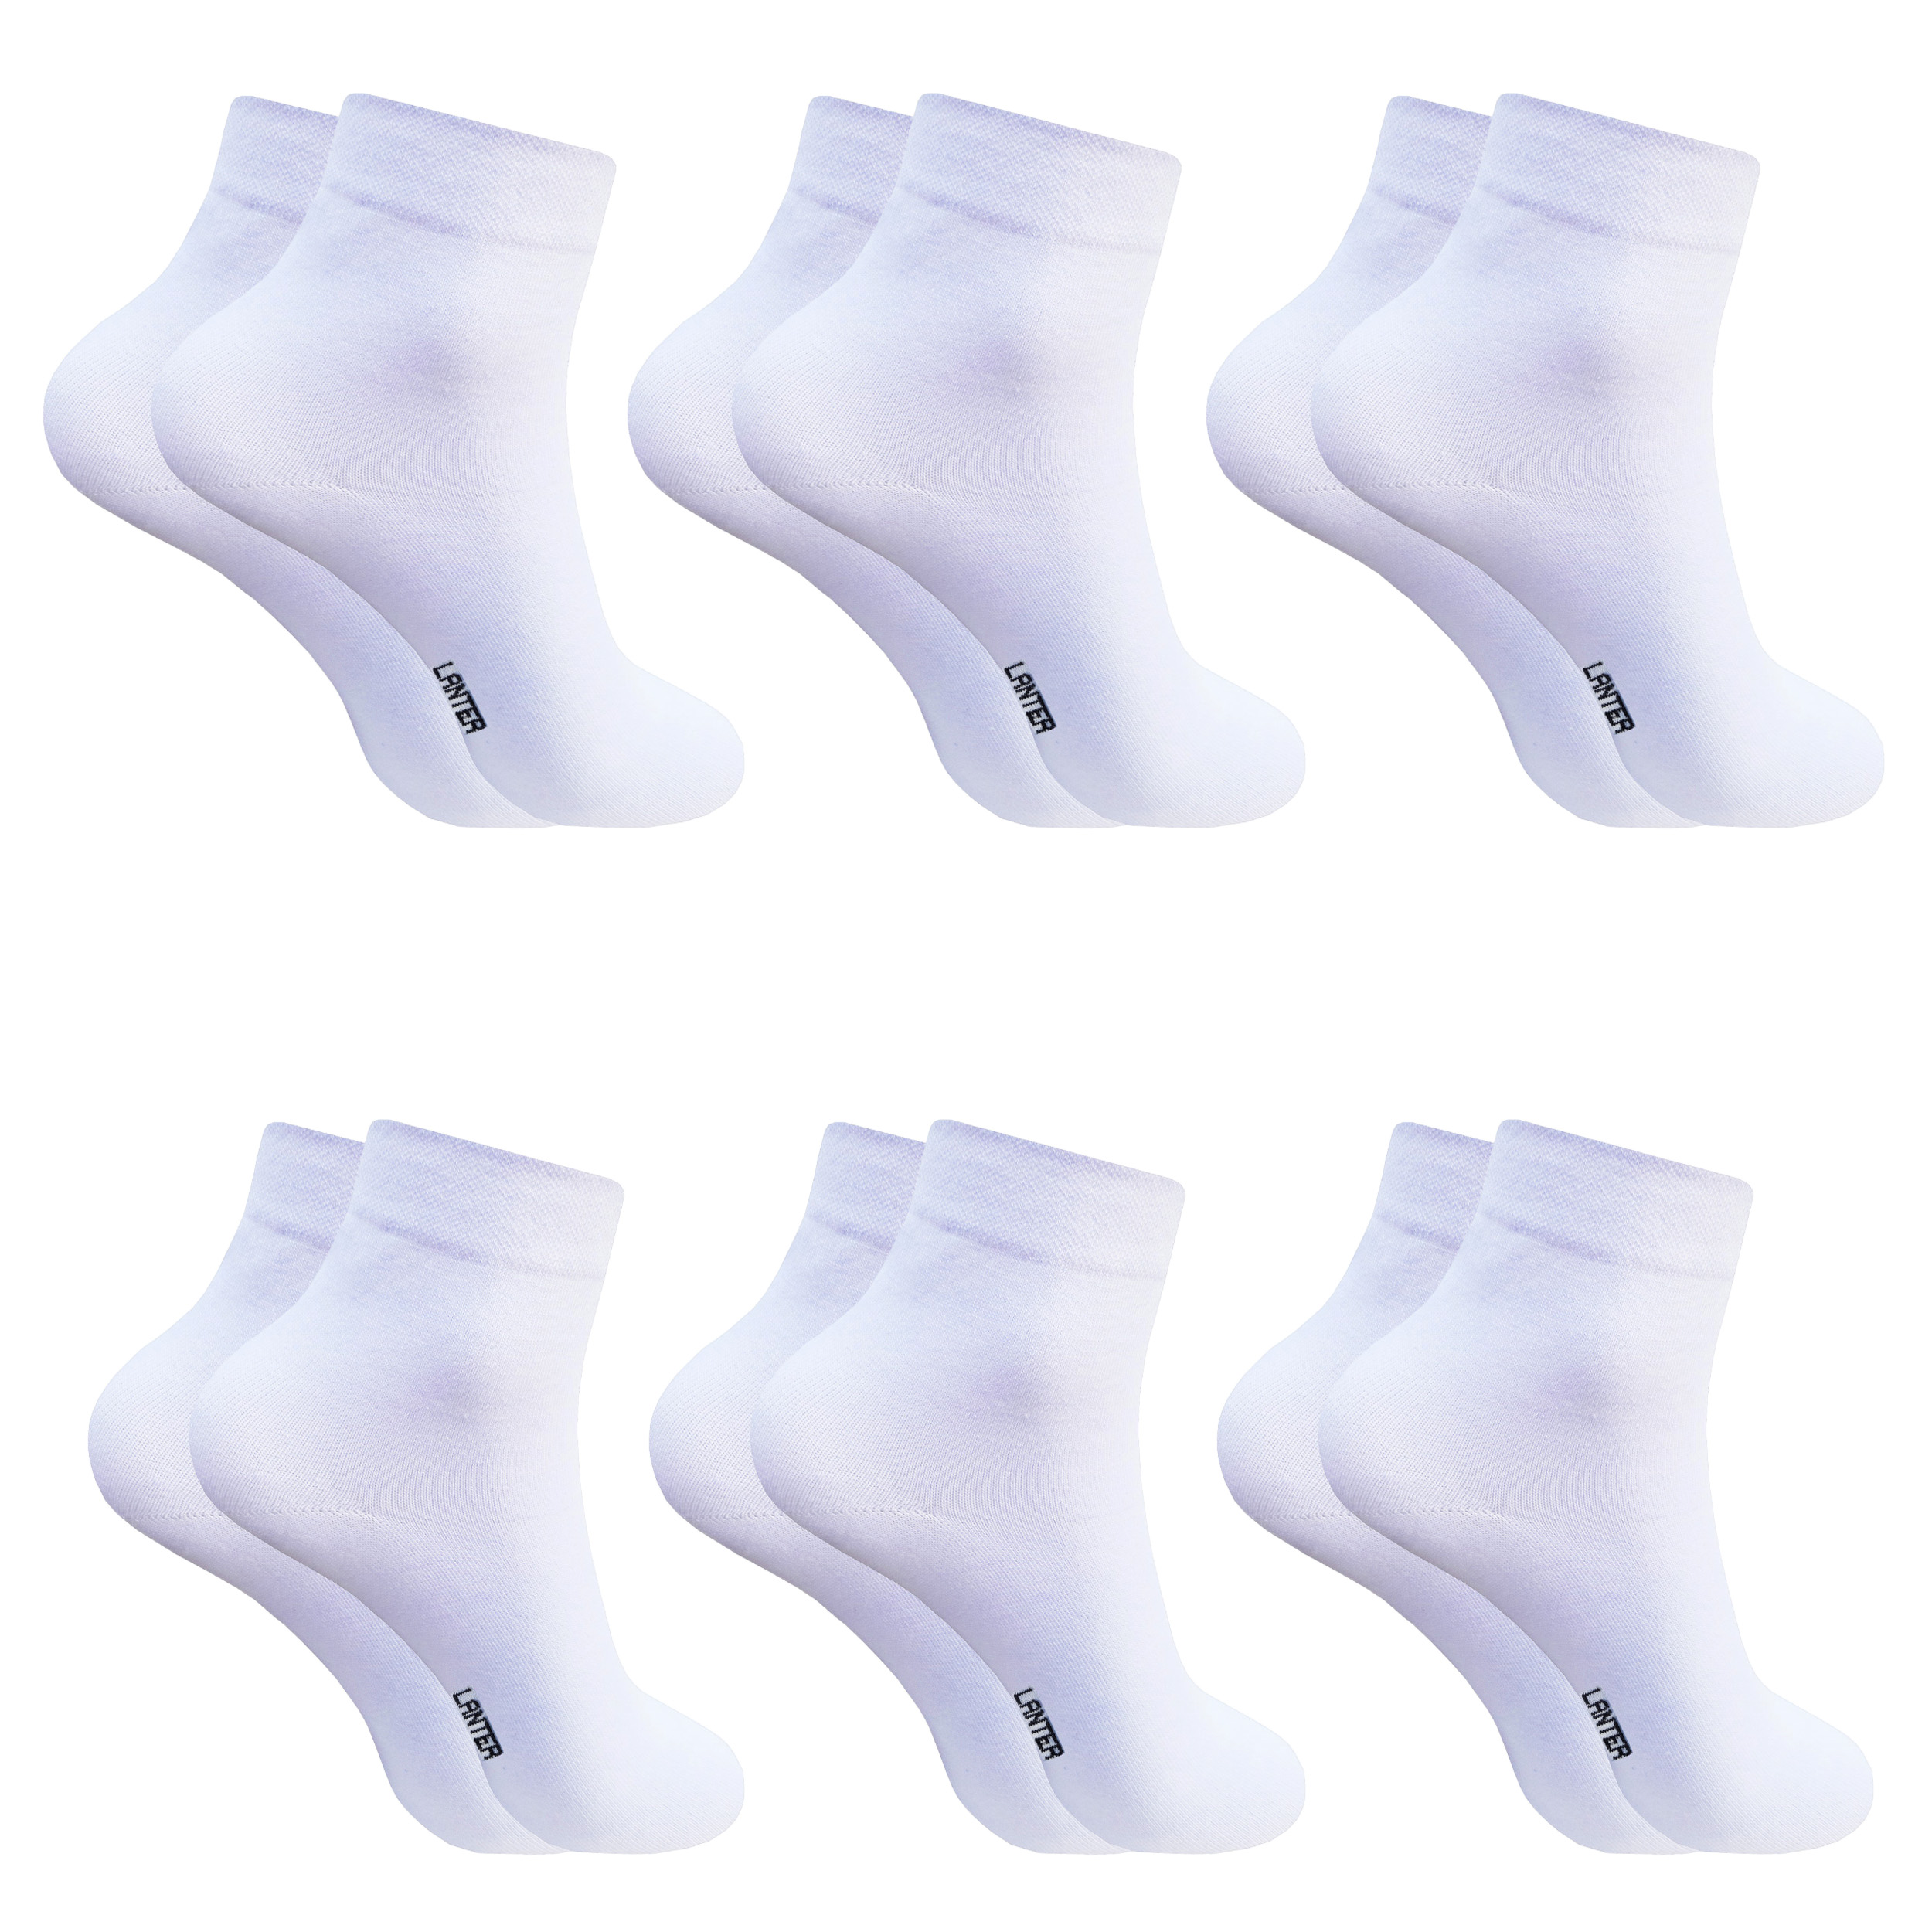 جوراب ساق کوتاه مردانه لنتر مدل ساده کد Ruellia رنگ سفید مجموعه 6 عددی